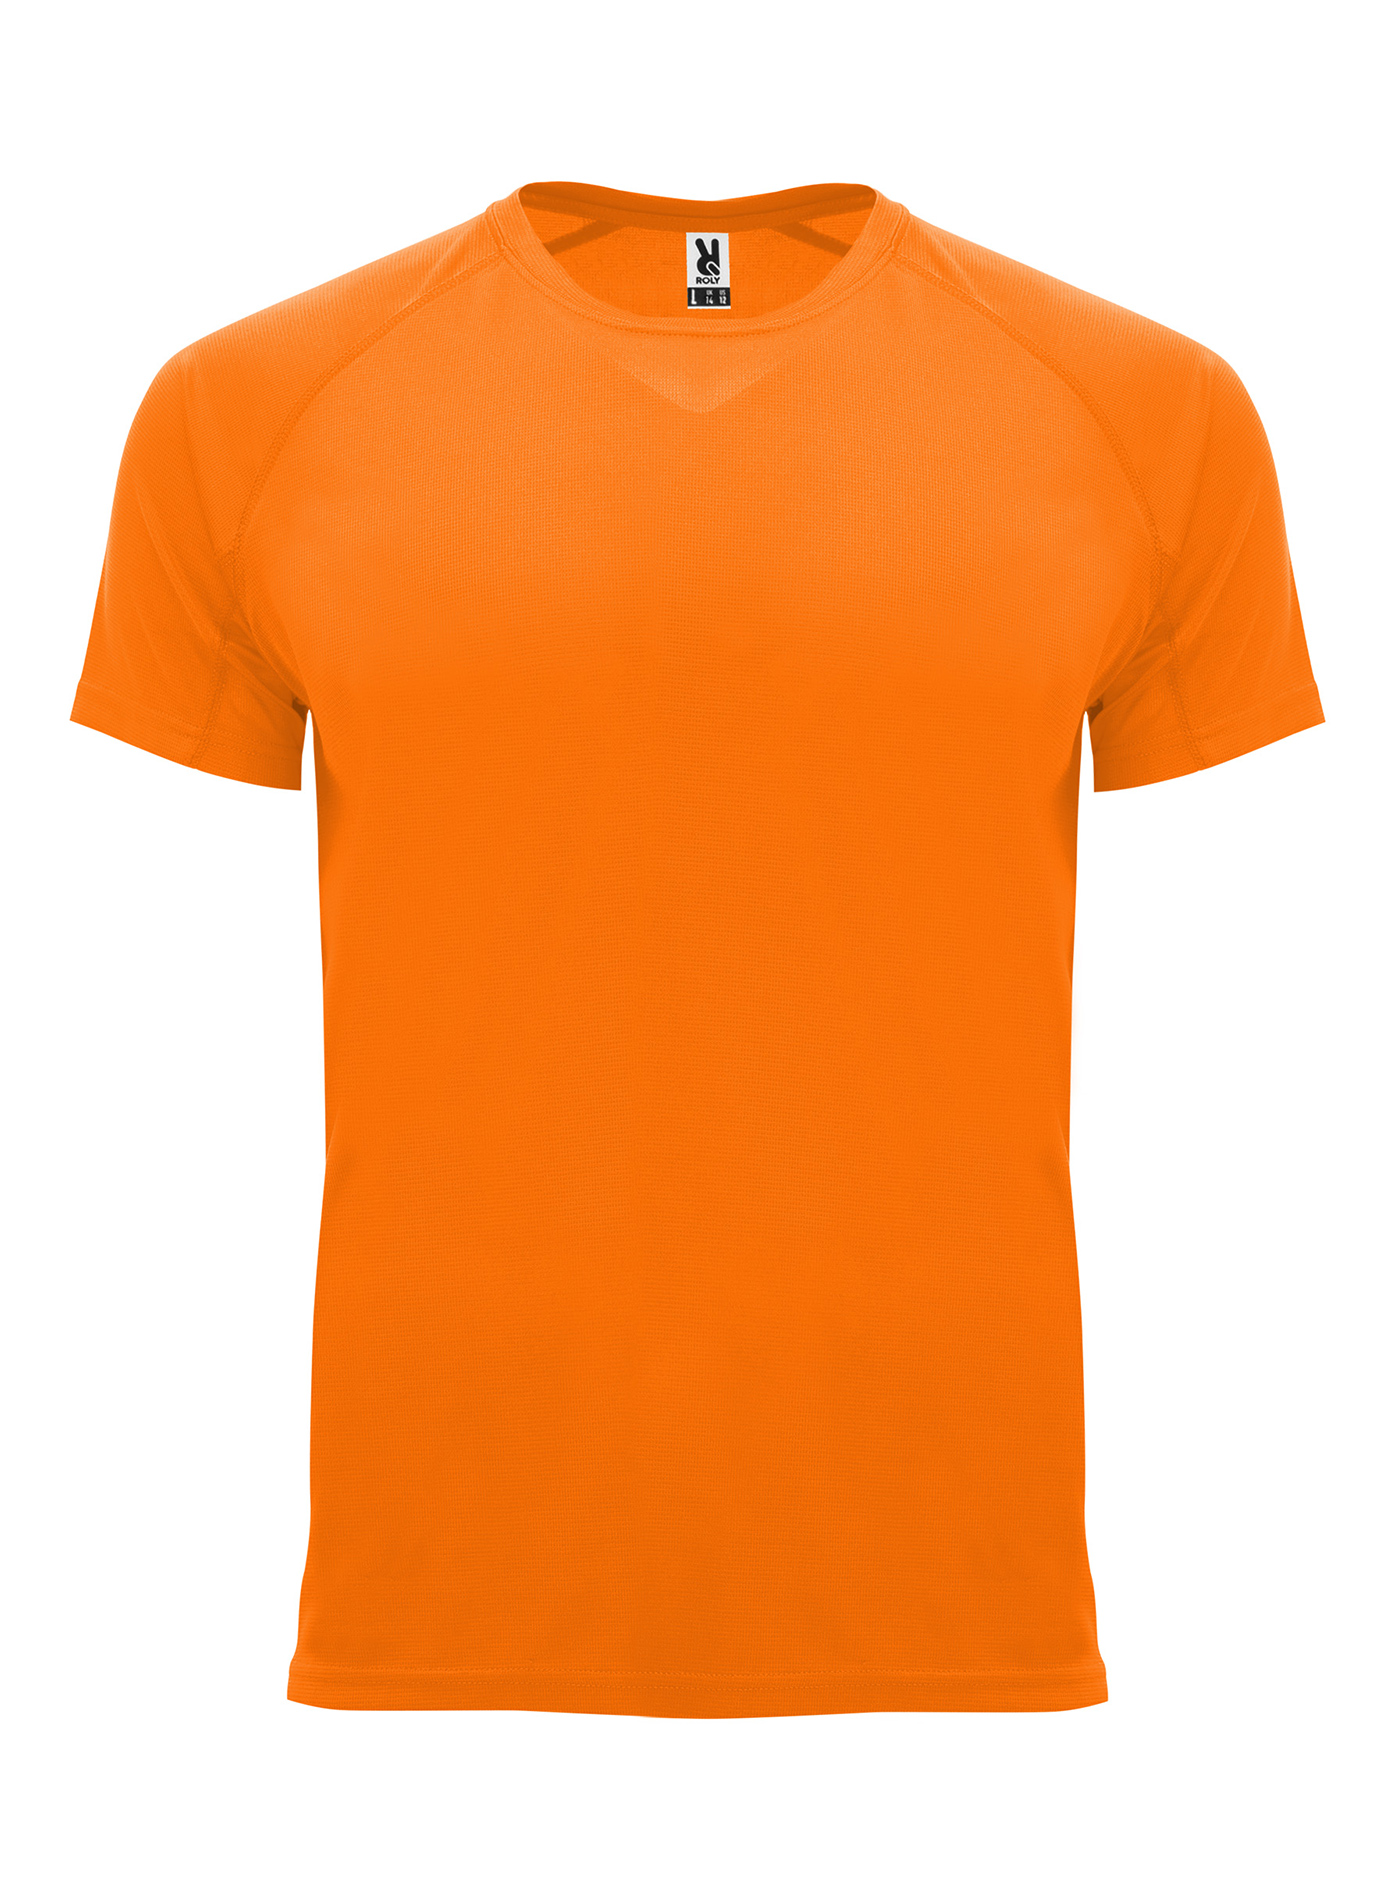 Pánské sportovní tričko Roly Bahrain - Neonová oranžová M